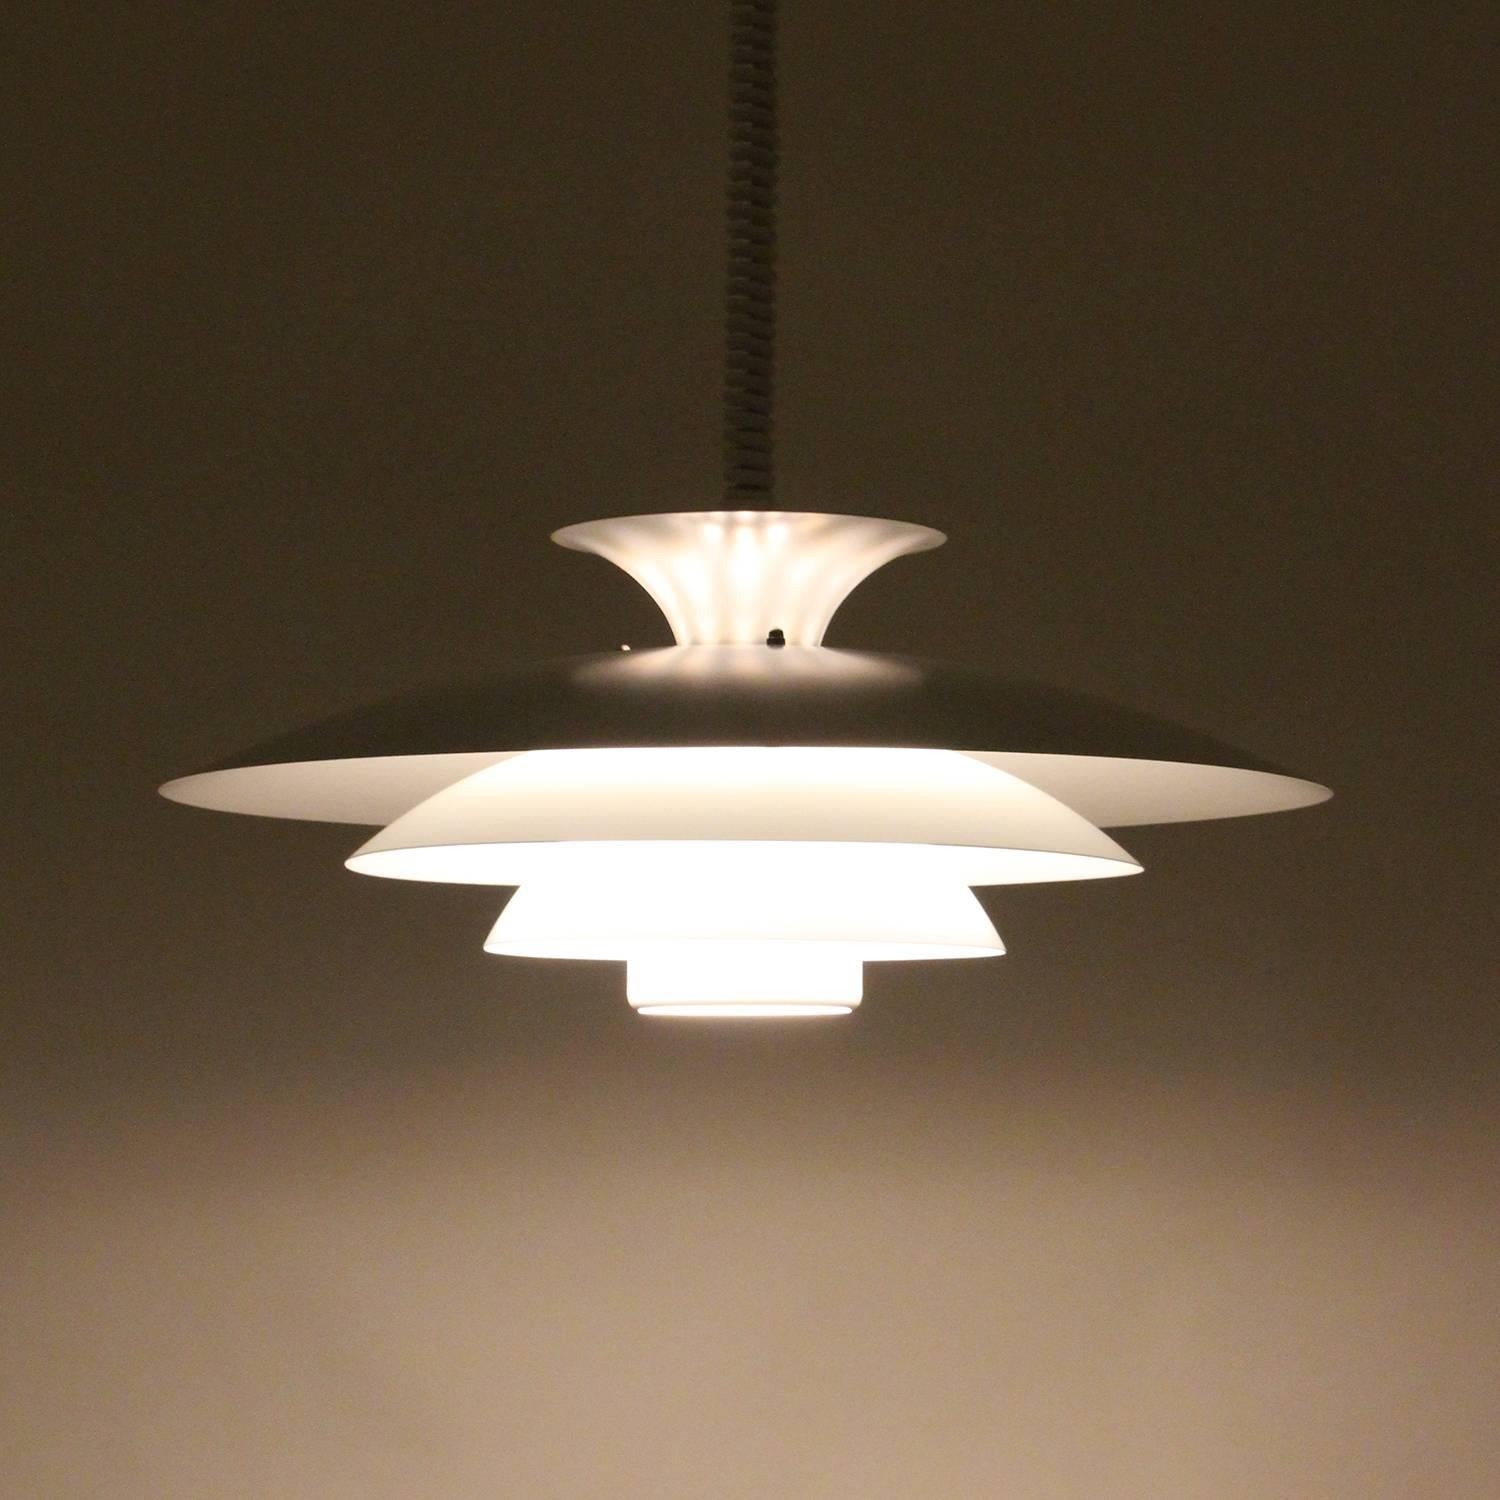 Danish No. 52511, White Pendant Light by Form-Light, 1970s, Large White Ceiling Light